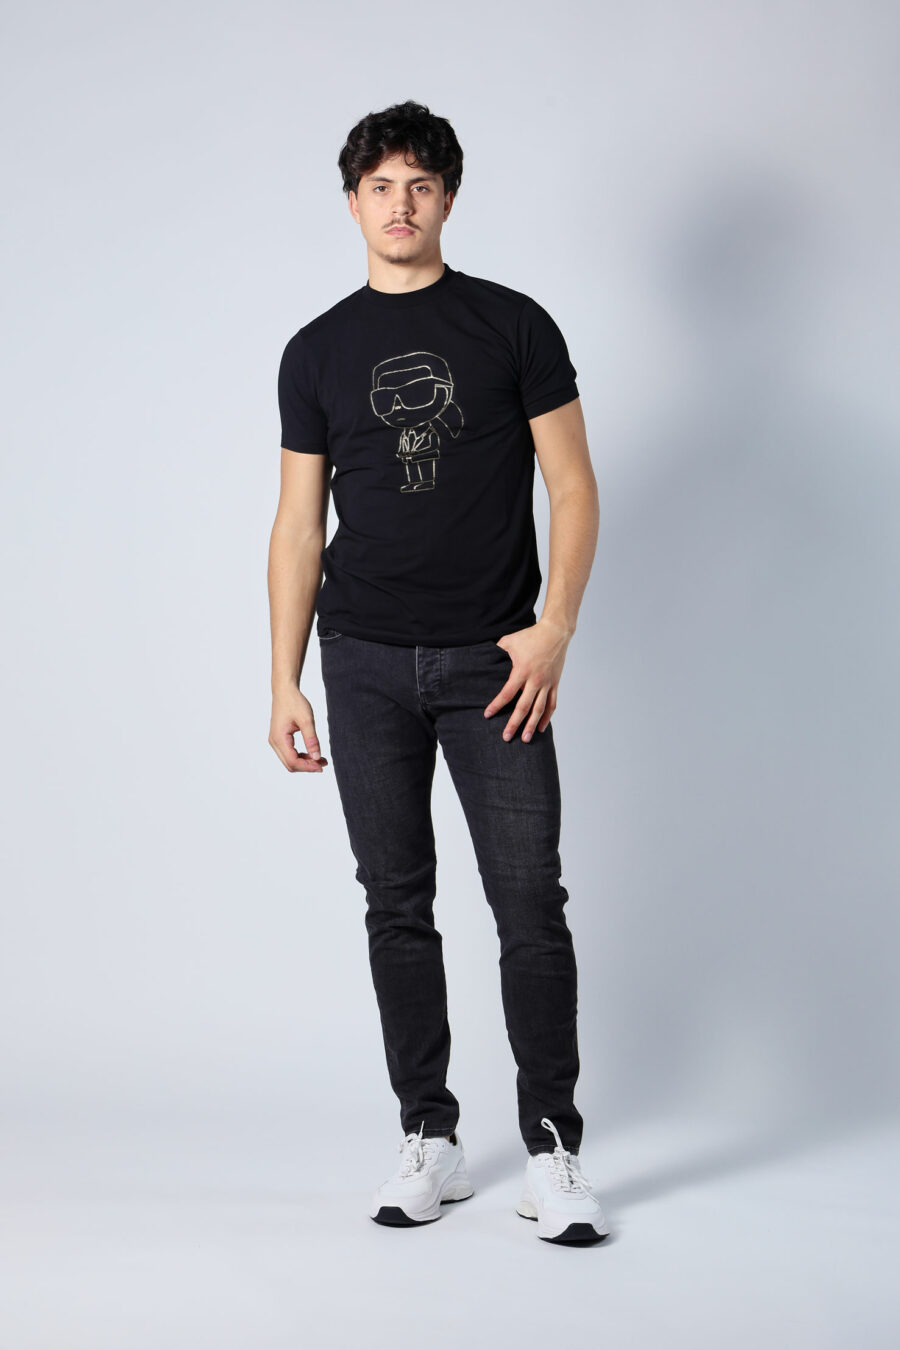 T-shirt preta com maxilogo "karl" dourado - Untitled Catalog 05707